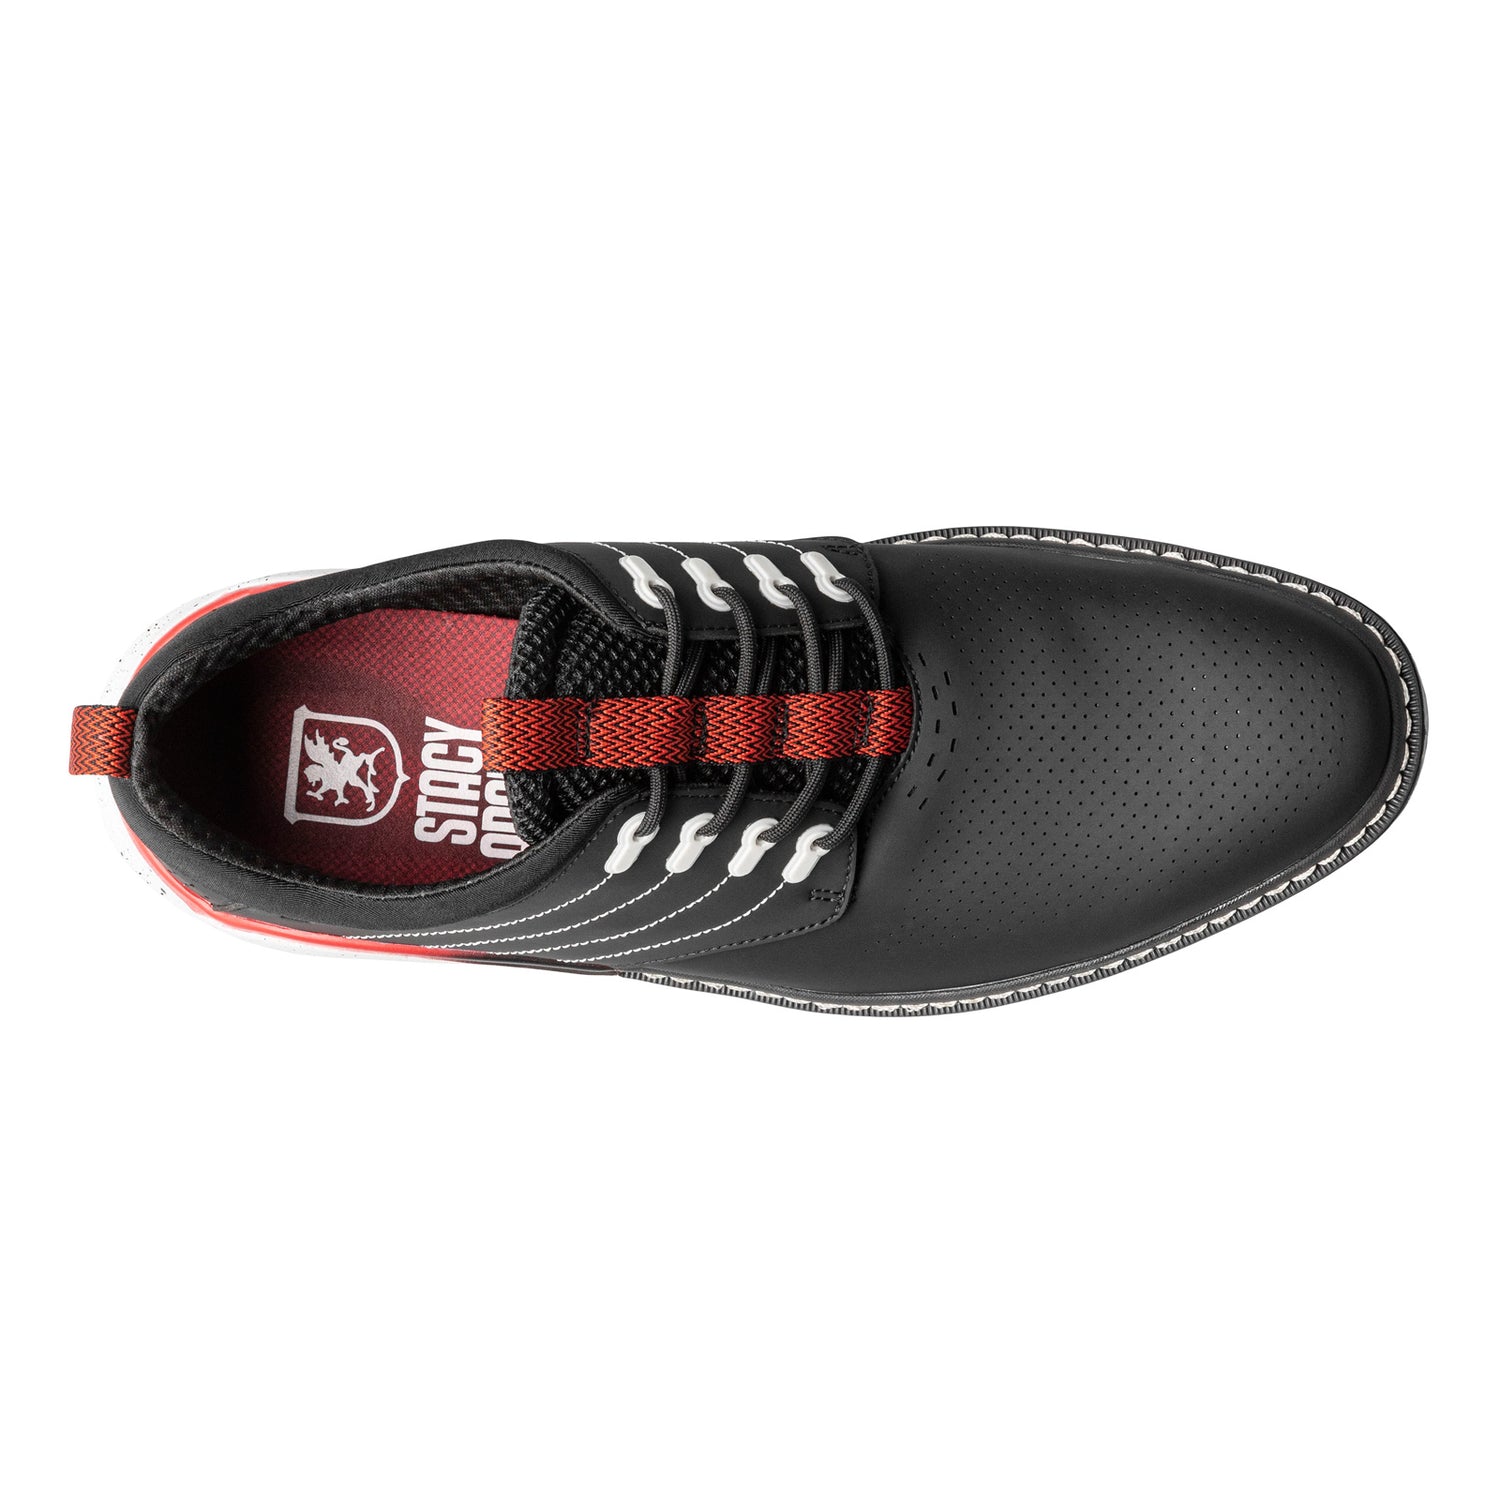 Peltz Shoes  Men's Stacy Adams Barna Sneaker Black 25594-001